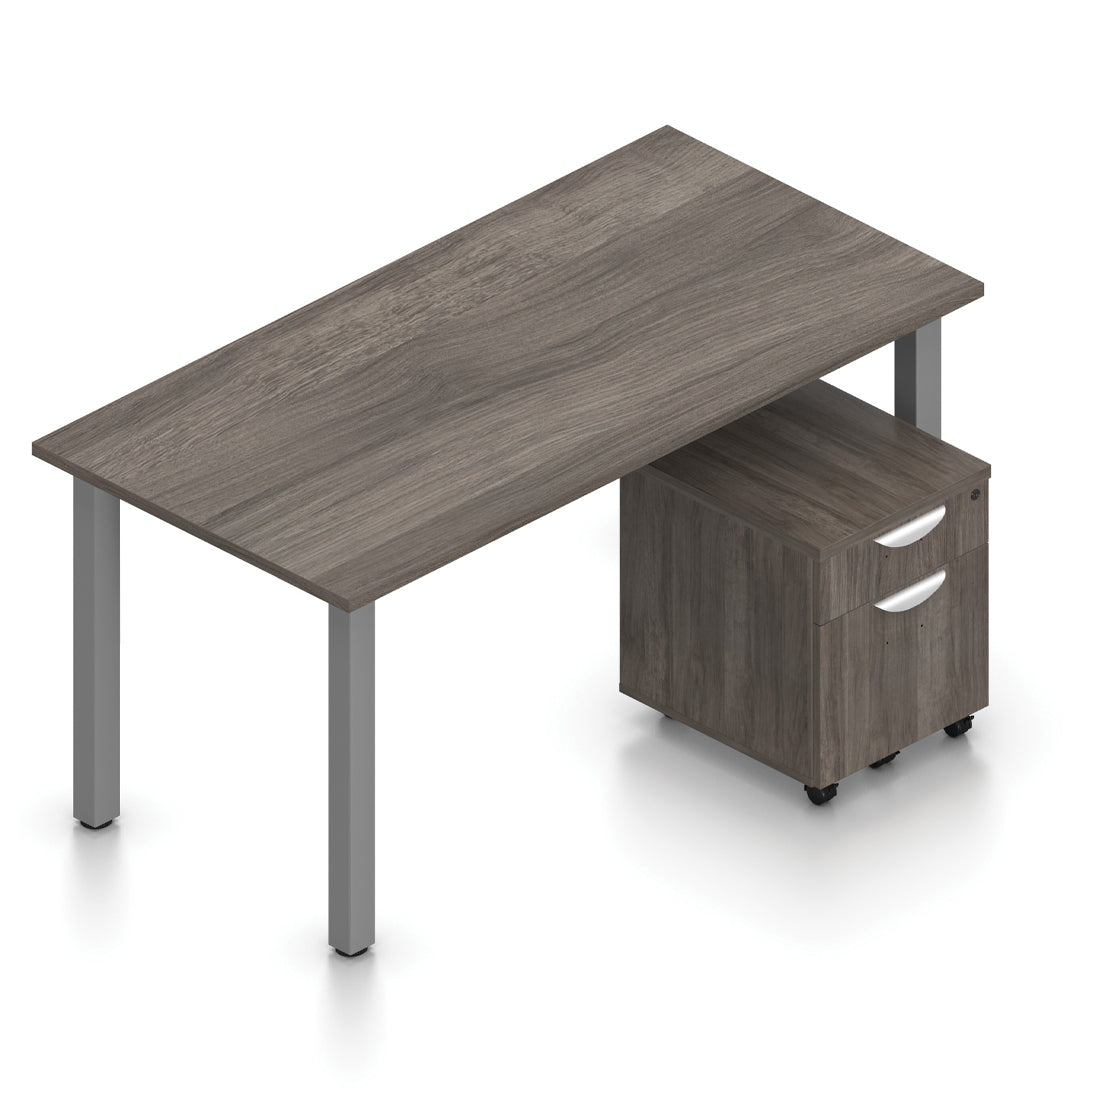 OTG 60” x 30” Rectangular Home Desk - Mobile Pedestal